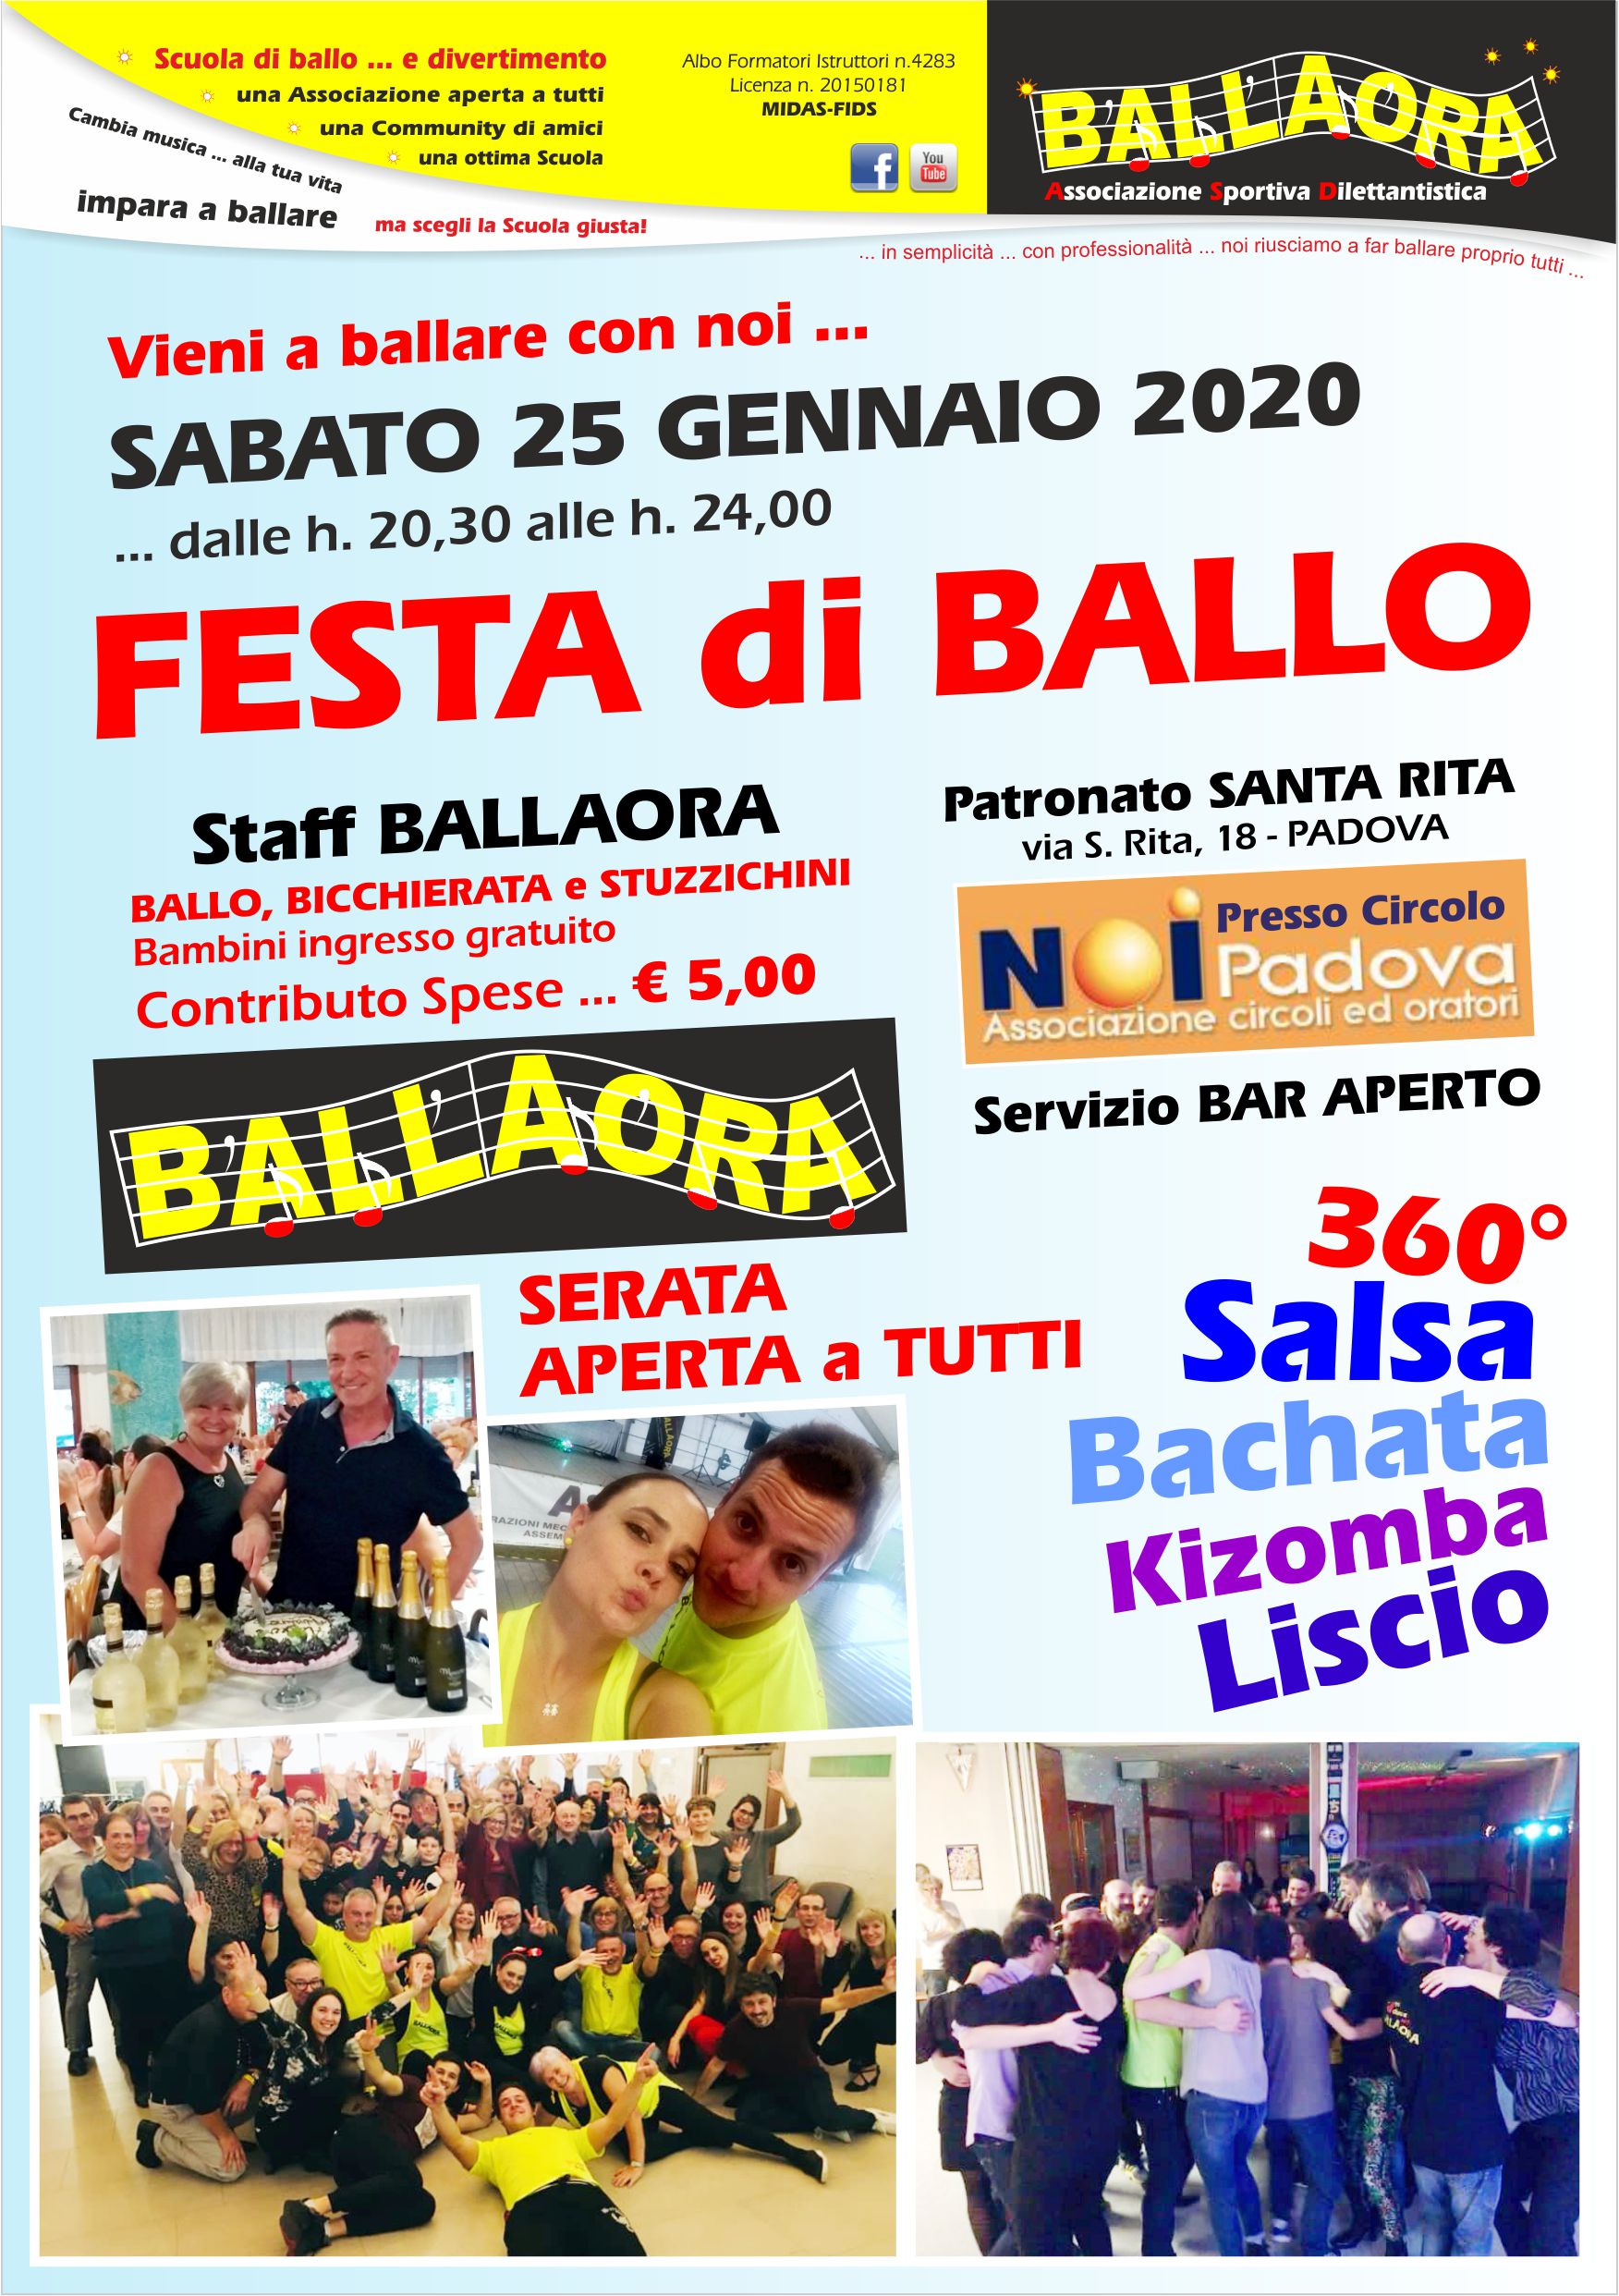 Festa di Ballo 25.01.2020 Patronato S. RITA 2020